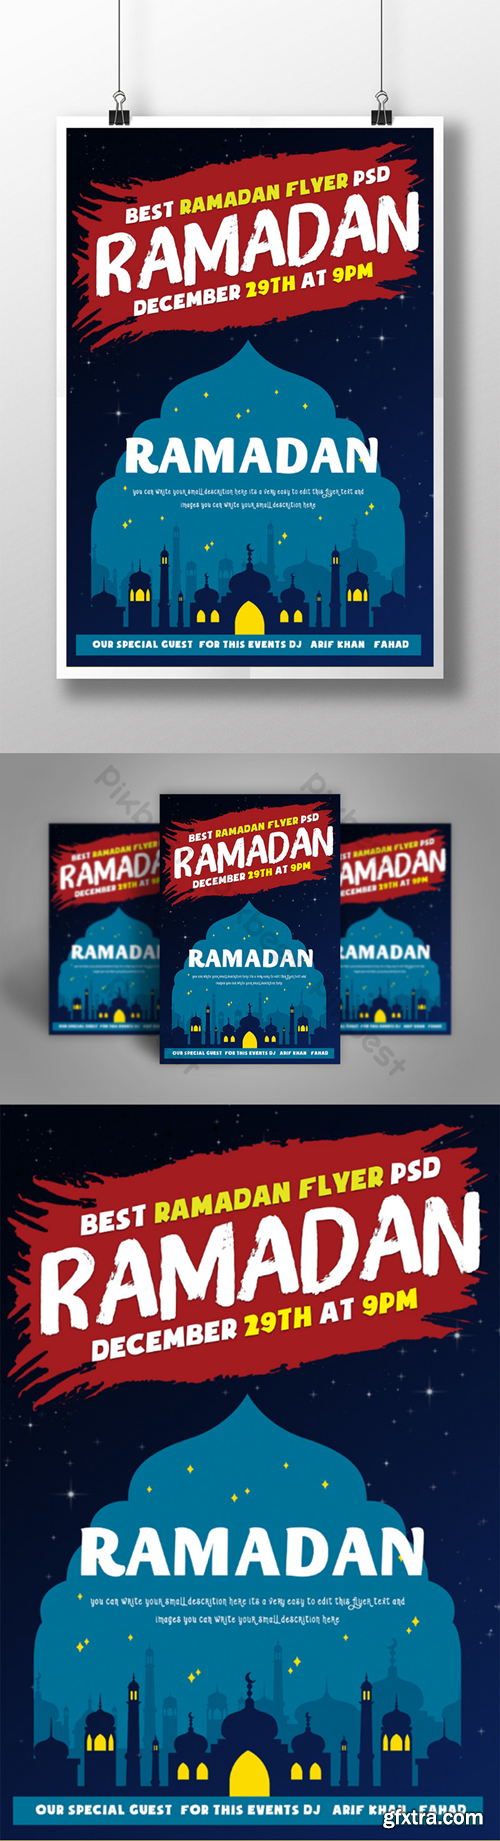 Islamic Ramadan Mubarak Lantern Flyer Template PSD